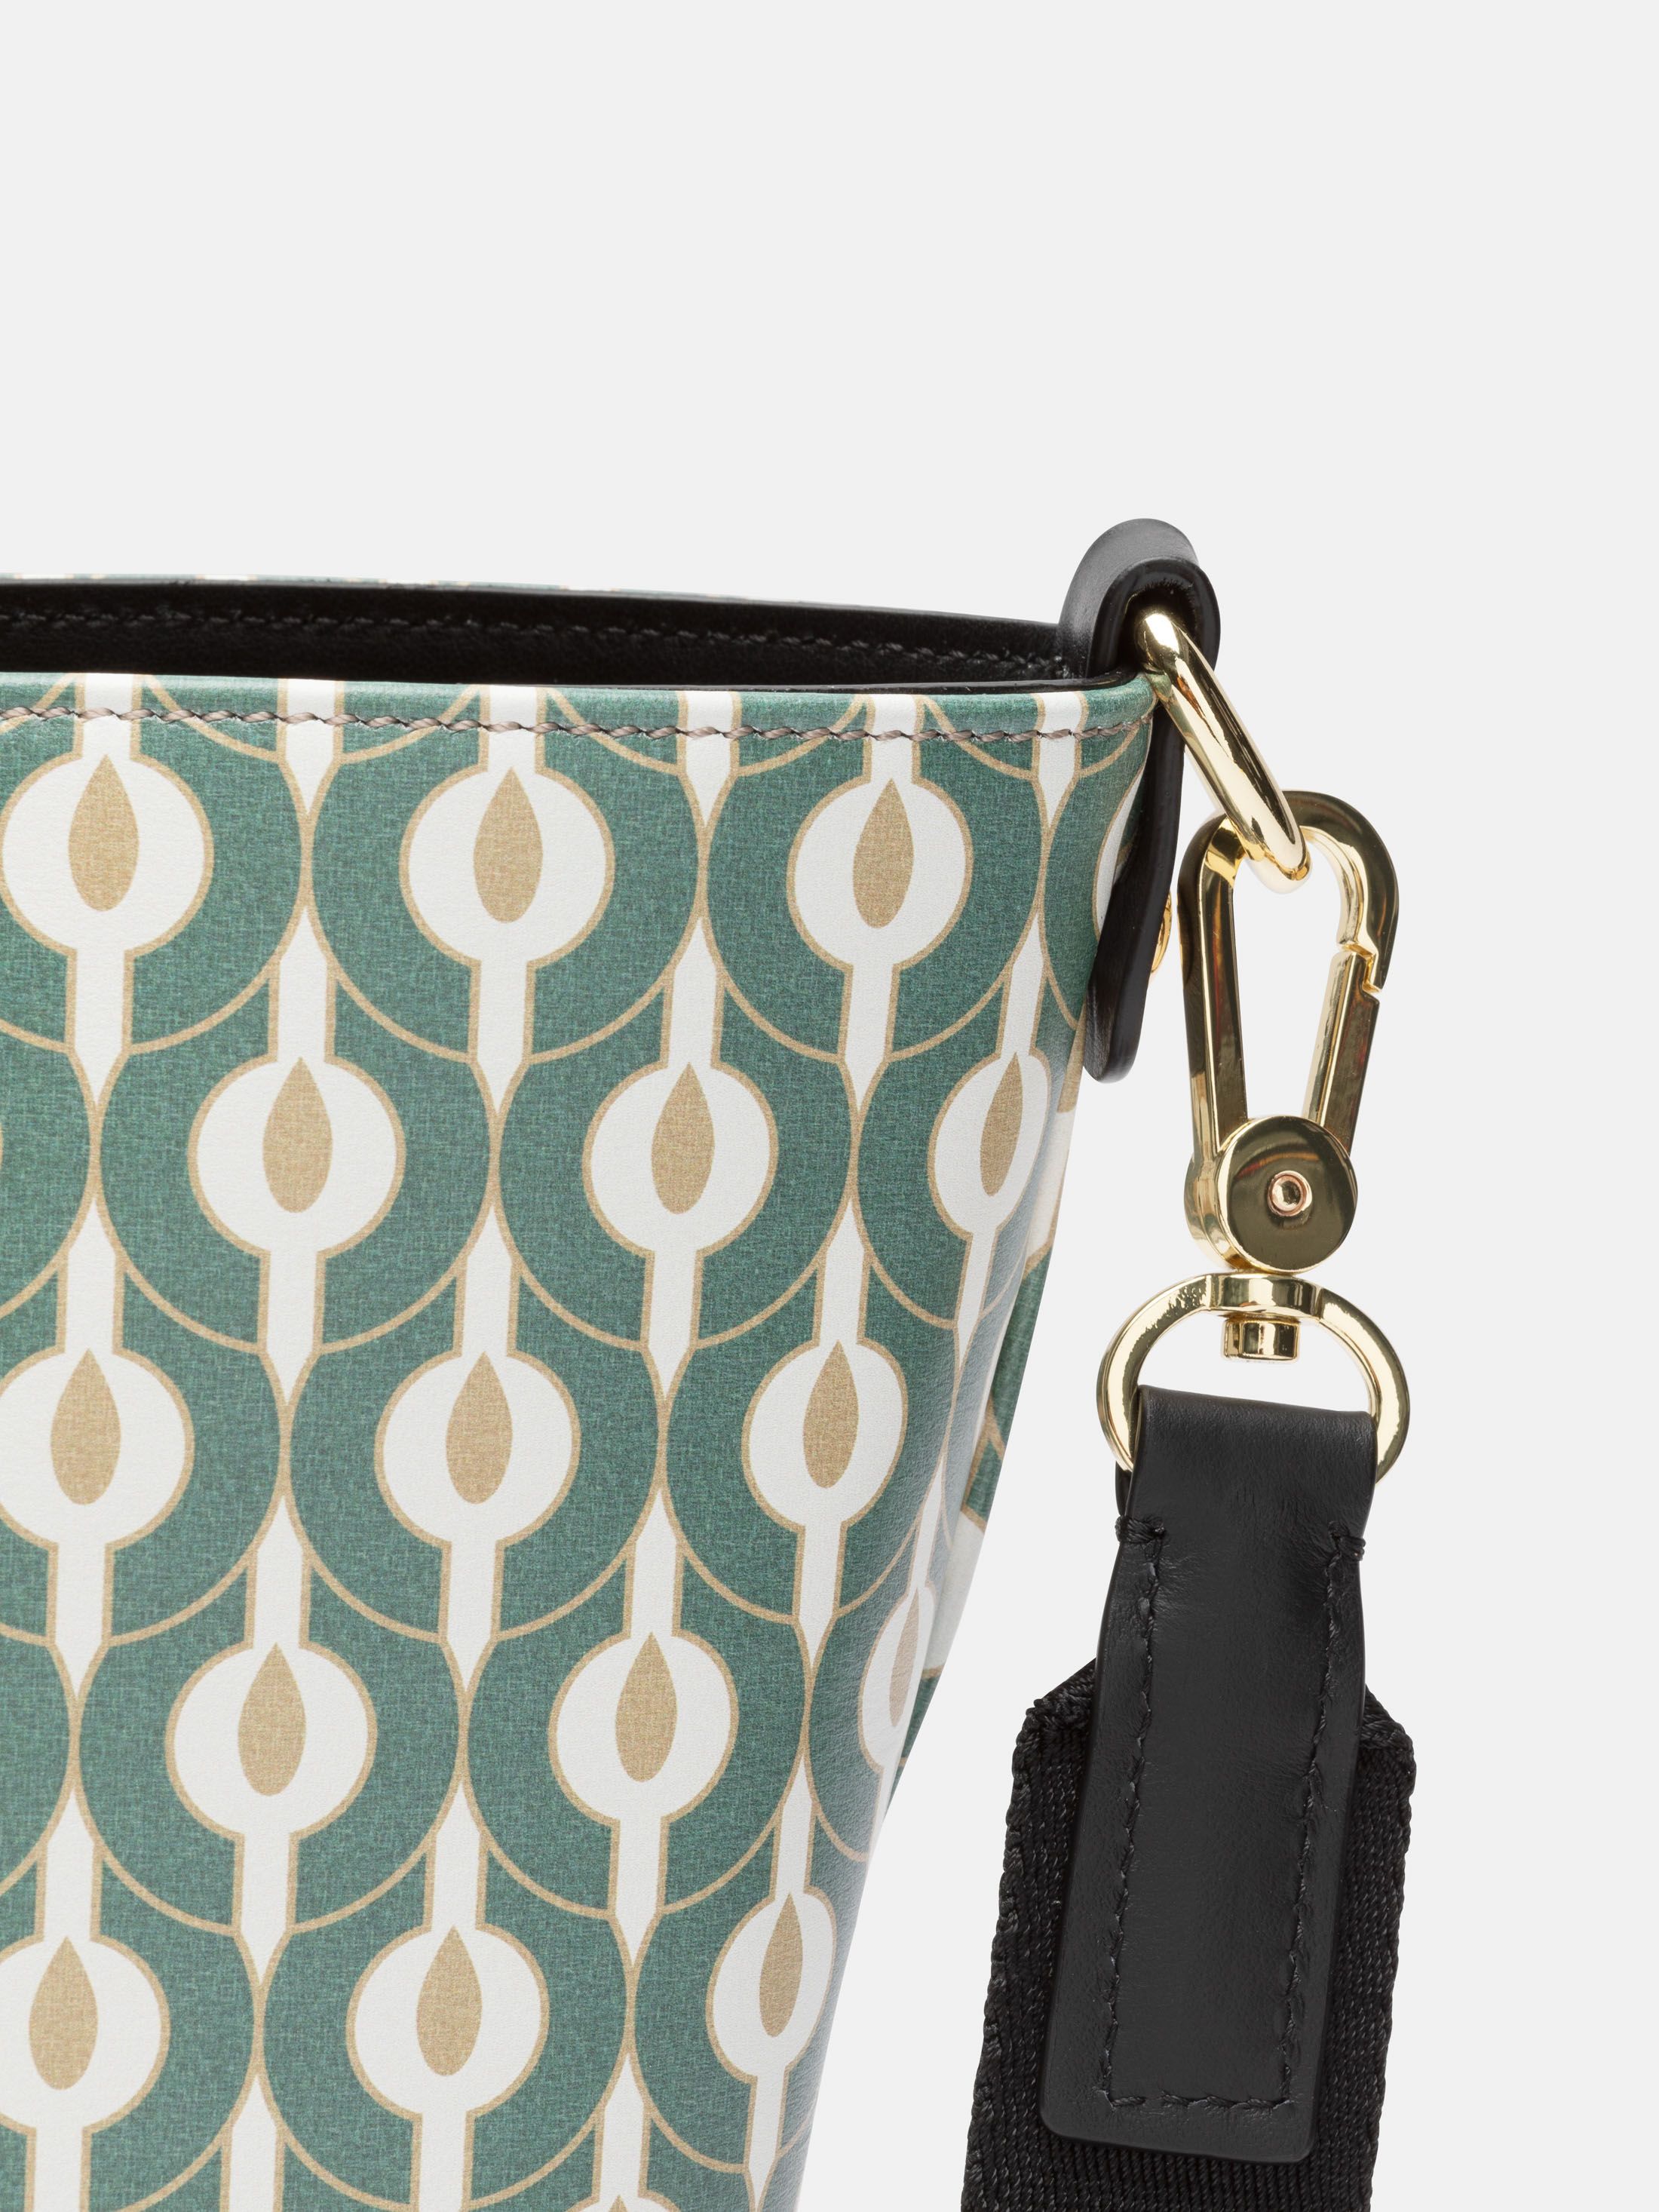 design your own shoulder bucket tote bag pattern